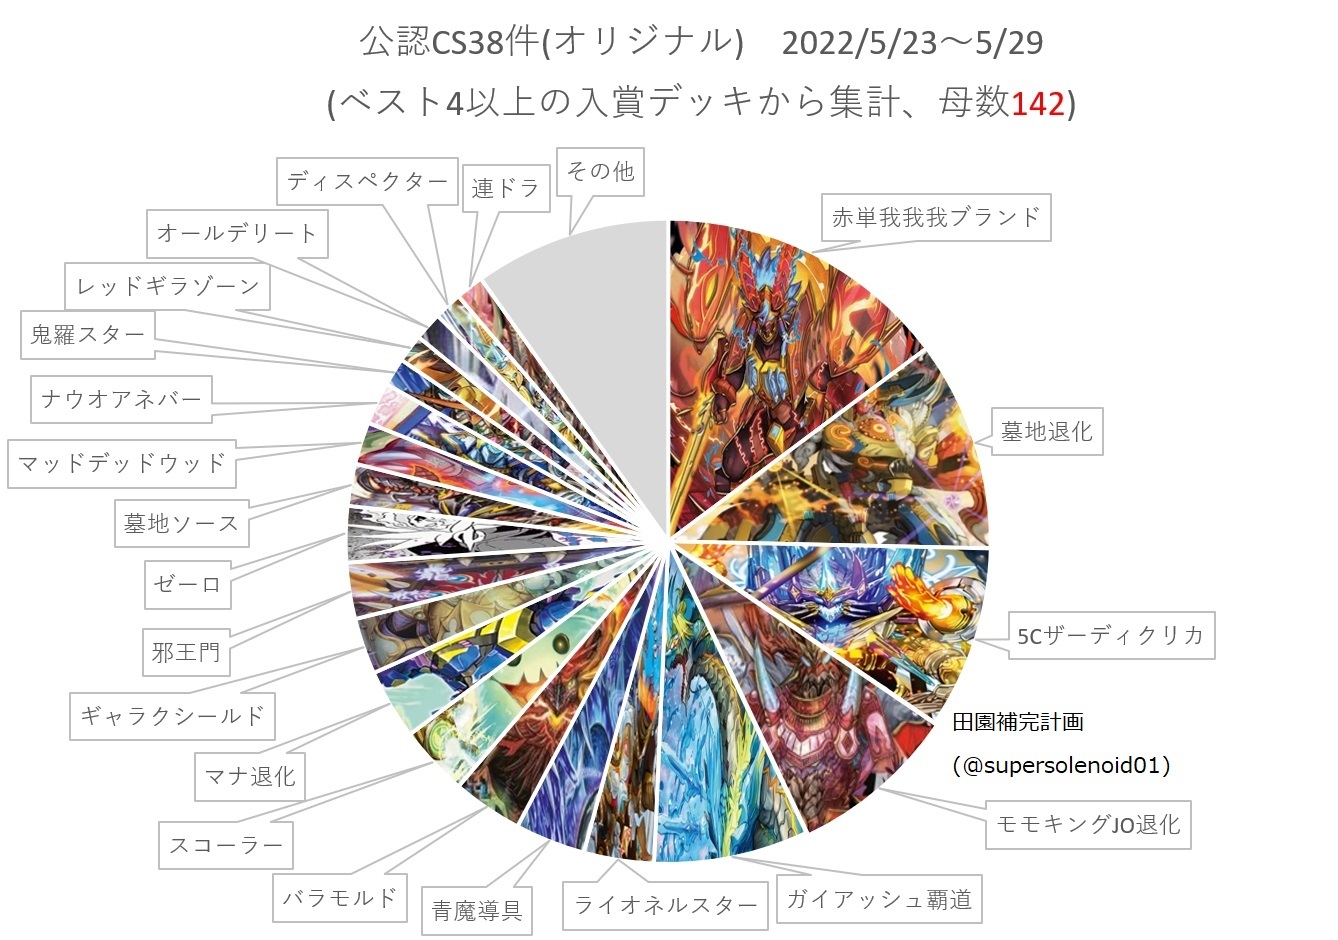 デュエルマスターズ】「オリジナルCS入賞数ランキング2022 Vol.22 (5 